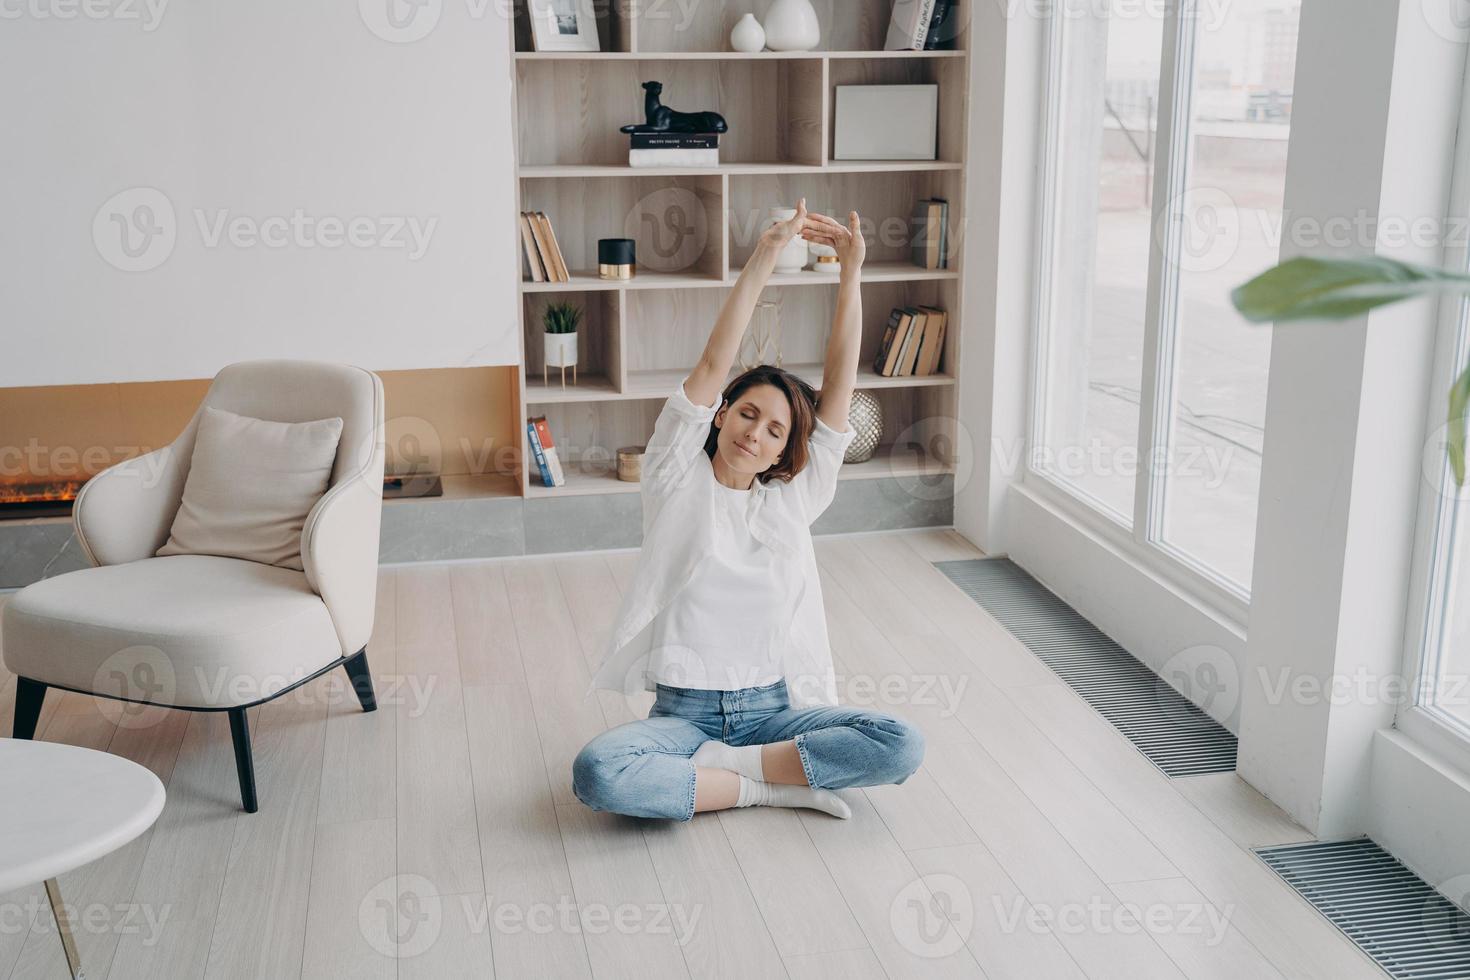 vrouw beoefenen yoga Aan verdieping in leven kamer, uitrekken armen omhoog. gezond levensstijl, welzijn foto